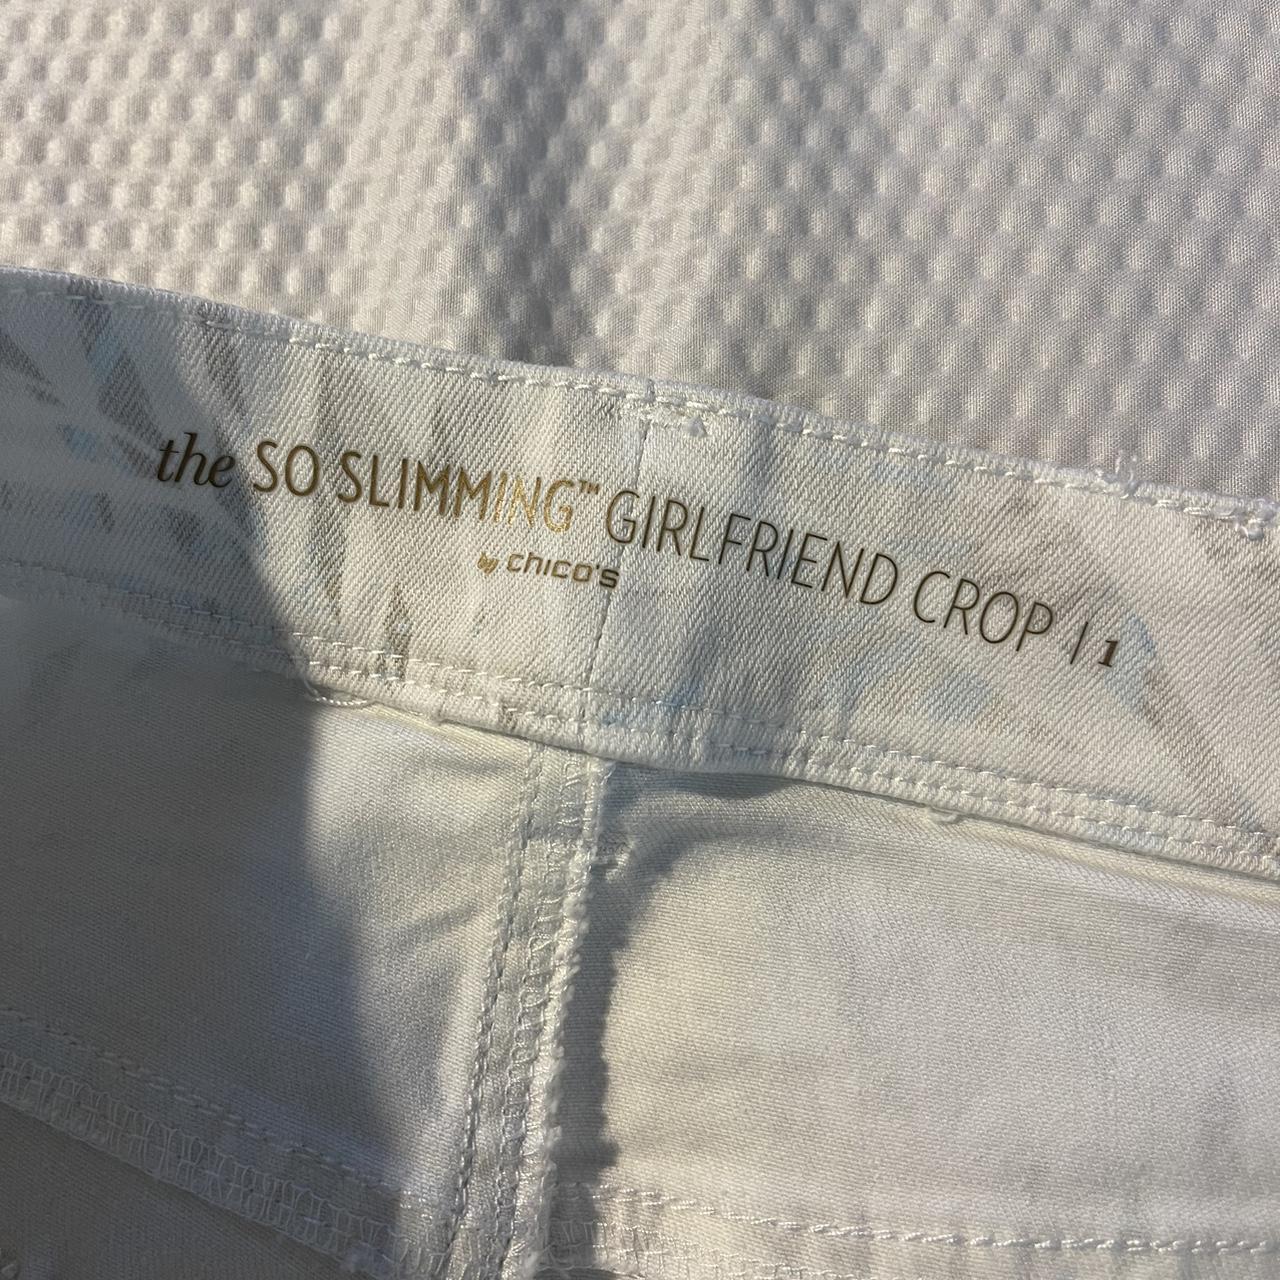 Chico's so slimming girlfriend crop white pants - Depop